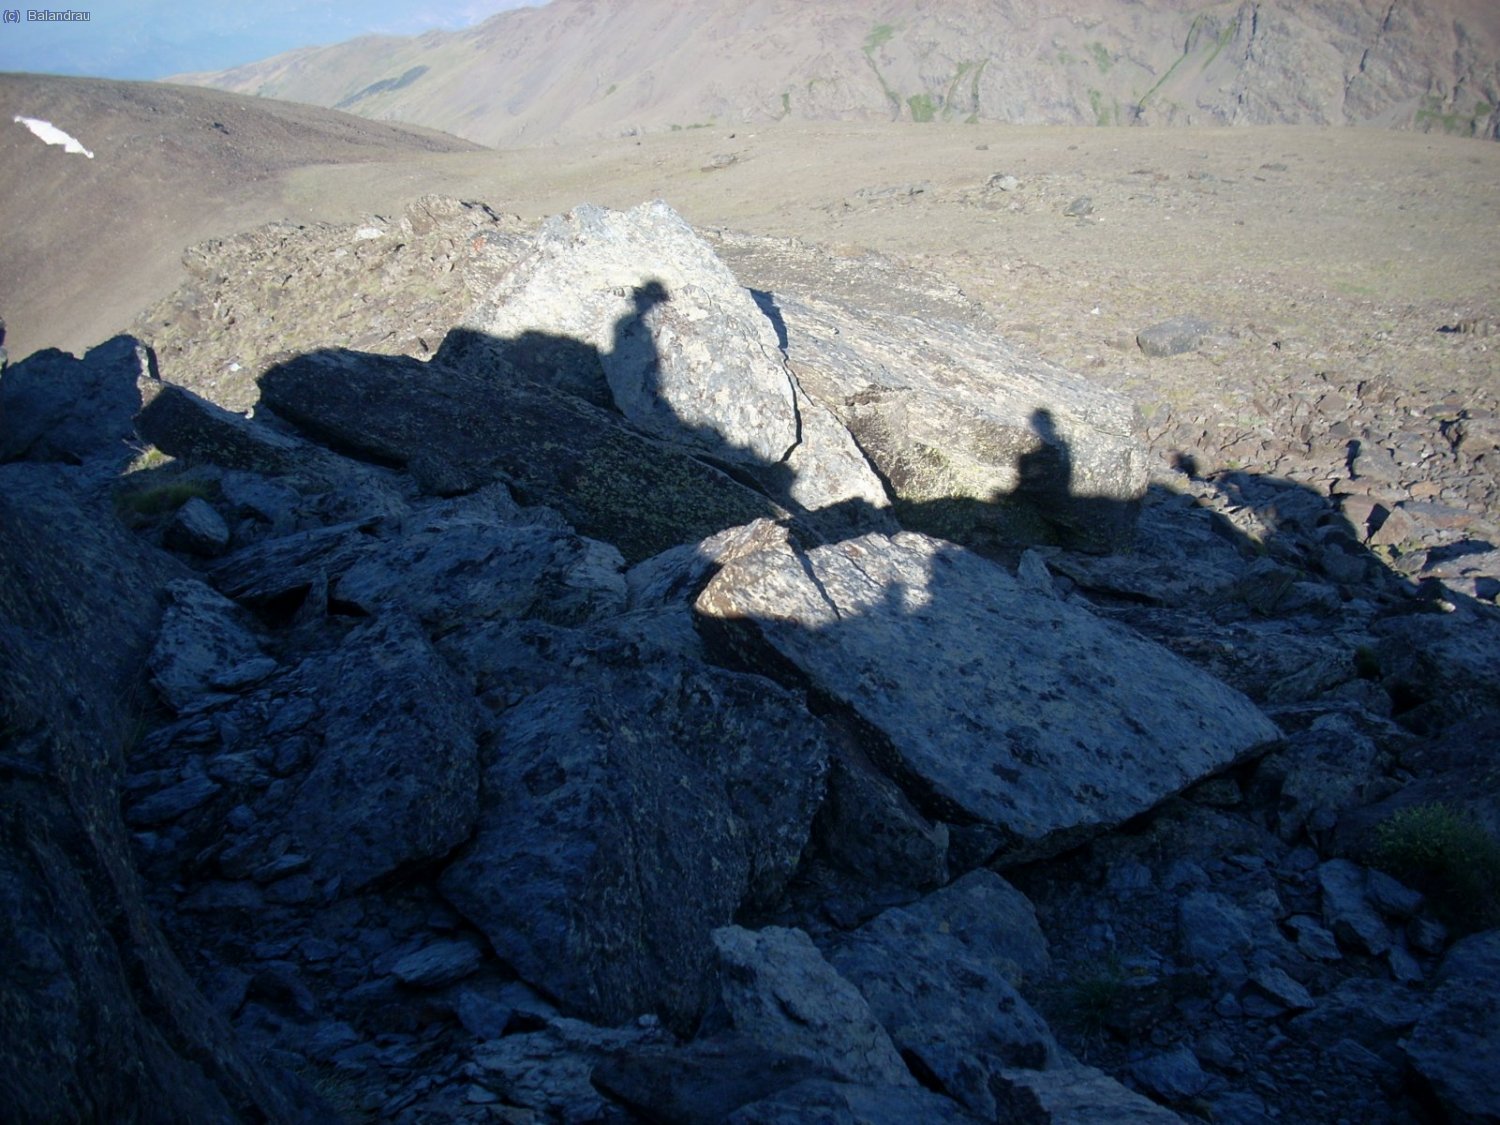 Nuestras sombras y nosotros mismos en la cumbre del Cerrillo Redondo a 3058 mts.